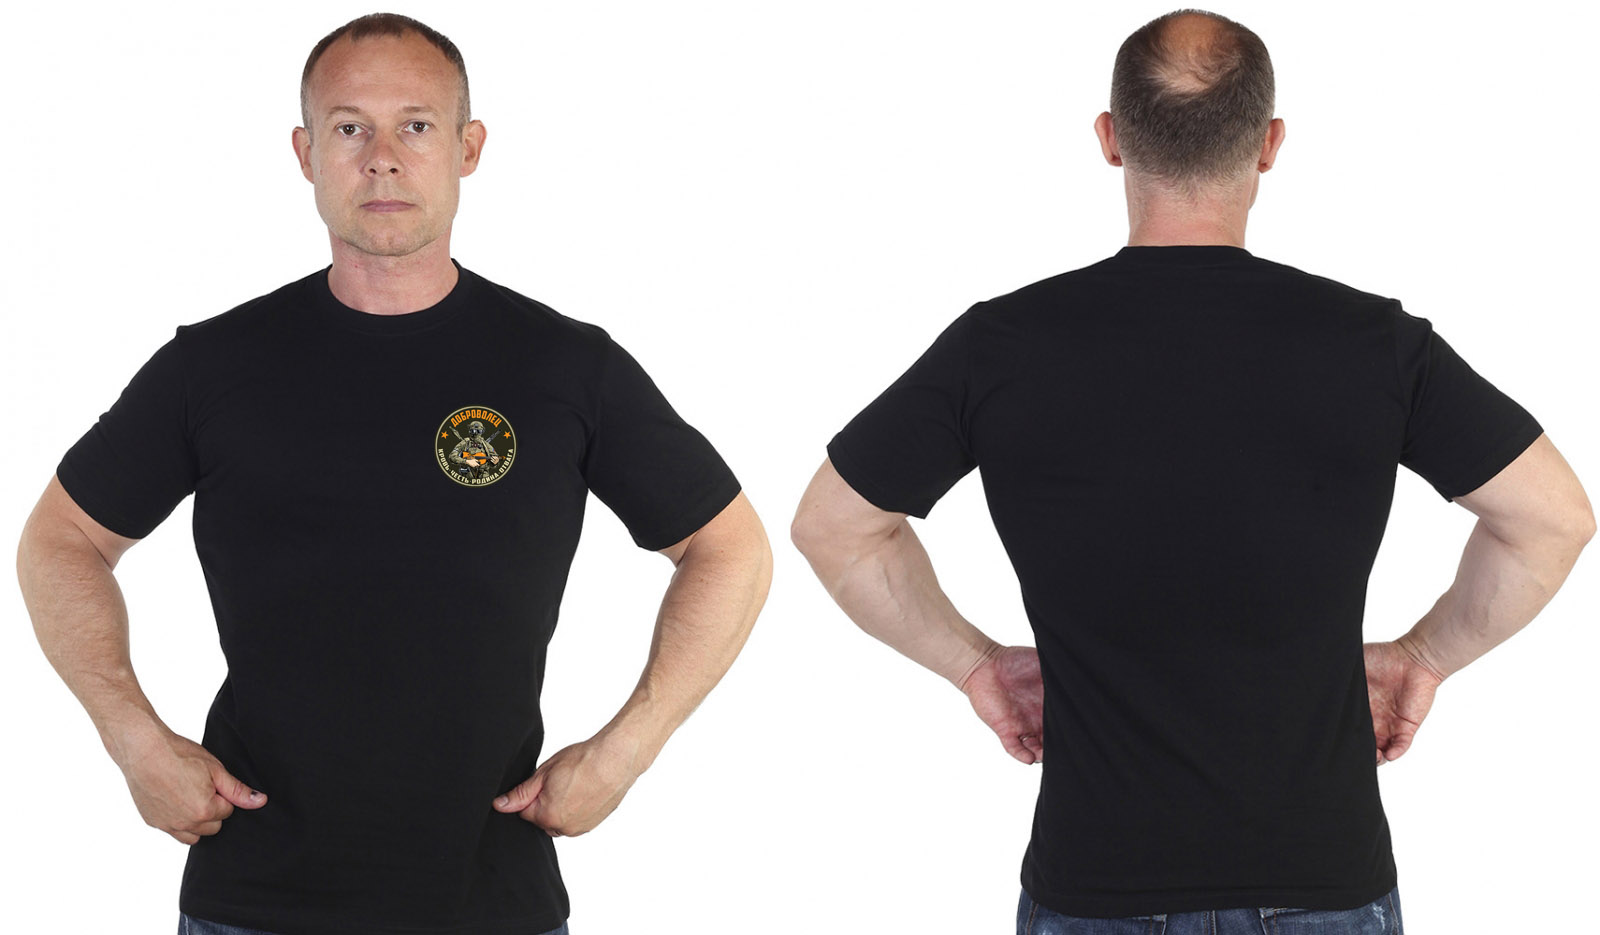 Купить трикотажную черную футболку с термотрансфером Доброволец выгодно